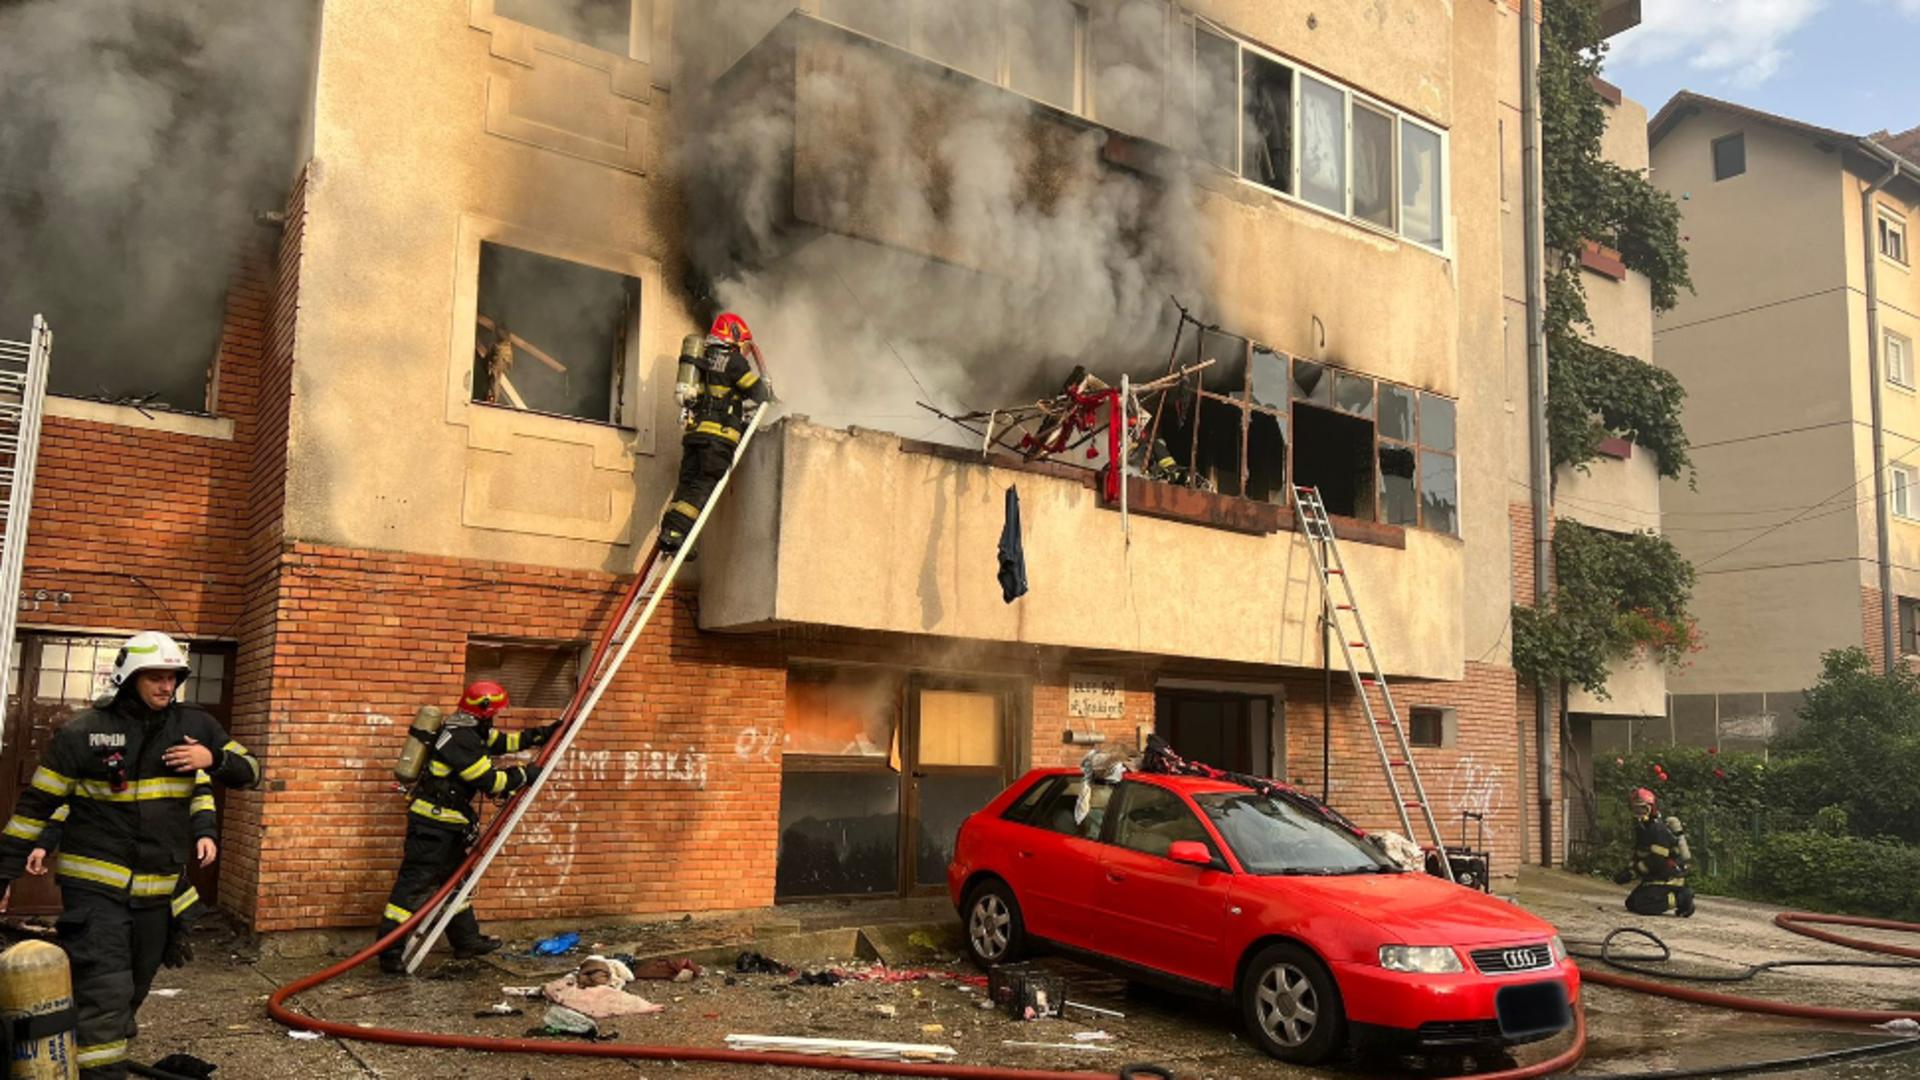 Explozie puternică, urmată de incendiu într-un apartament din Sibiu. Panică printre locatari, 20 de persoane evacuate din bloc. VIDEO